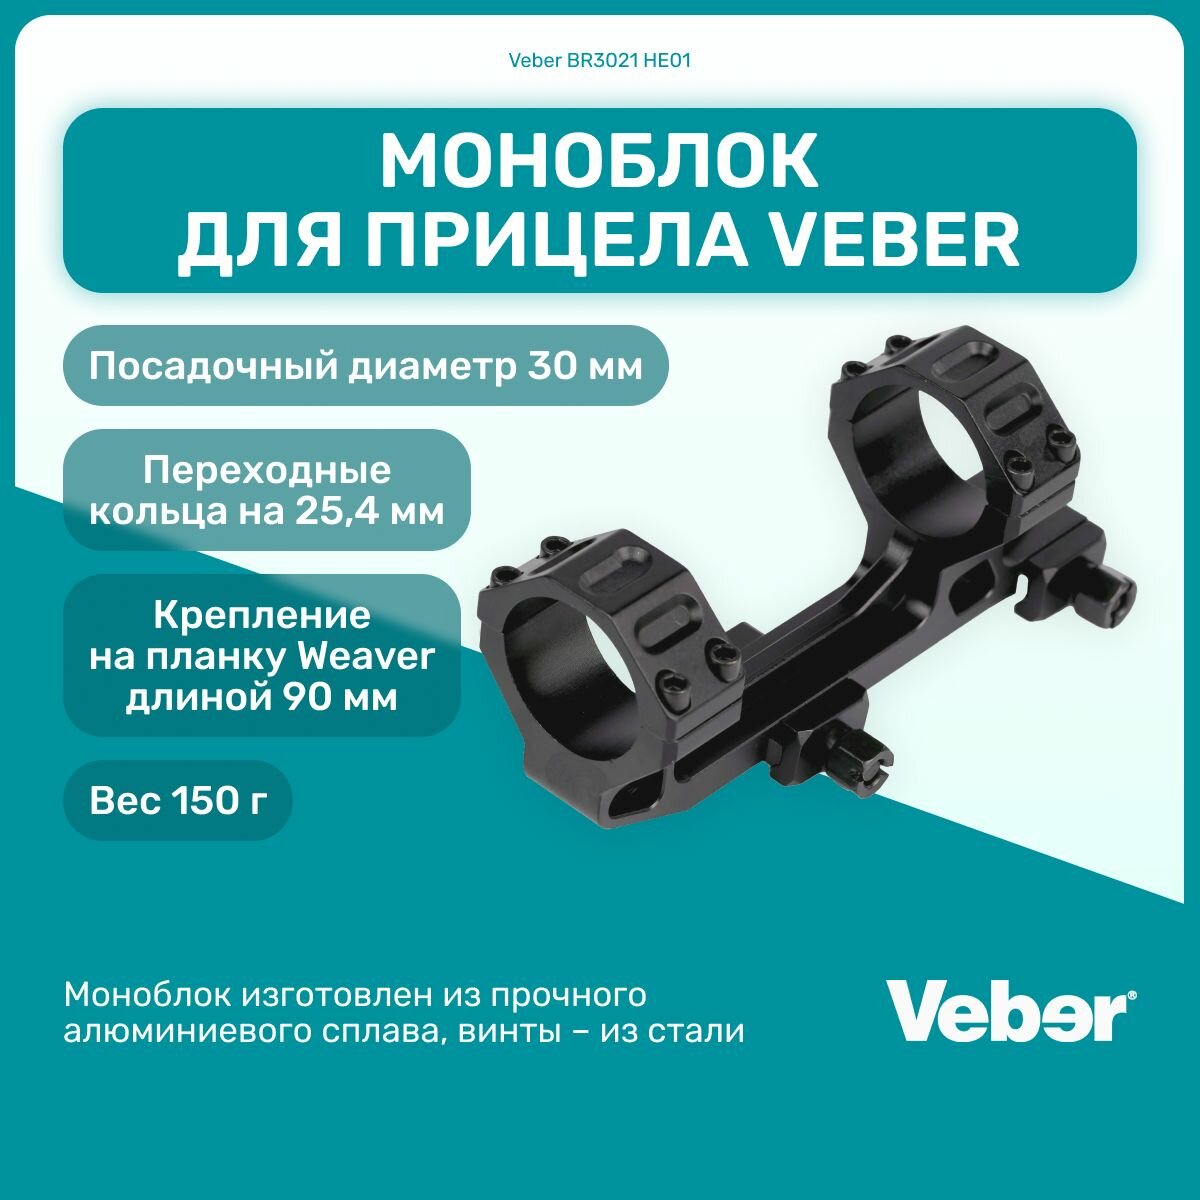 Моноблок для прицела Veber BR3021 HE01, Weaver 90 мм, диаметр 30 мм, 25,4 мм, для охоты, спортивной стрельбы, активный отдых